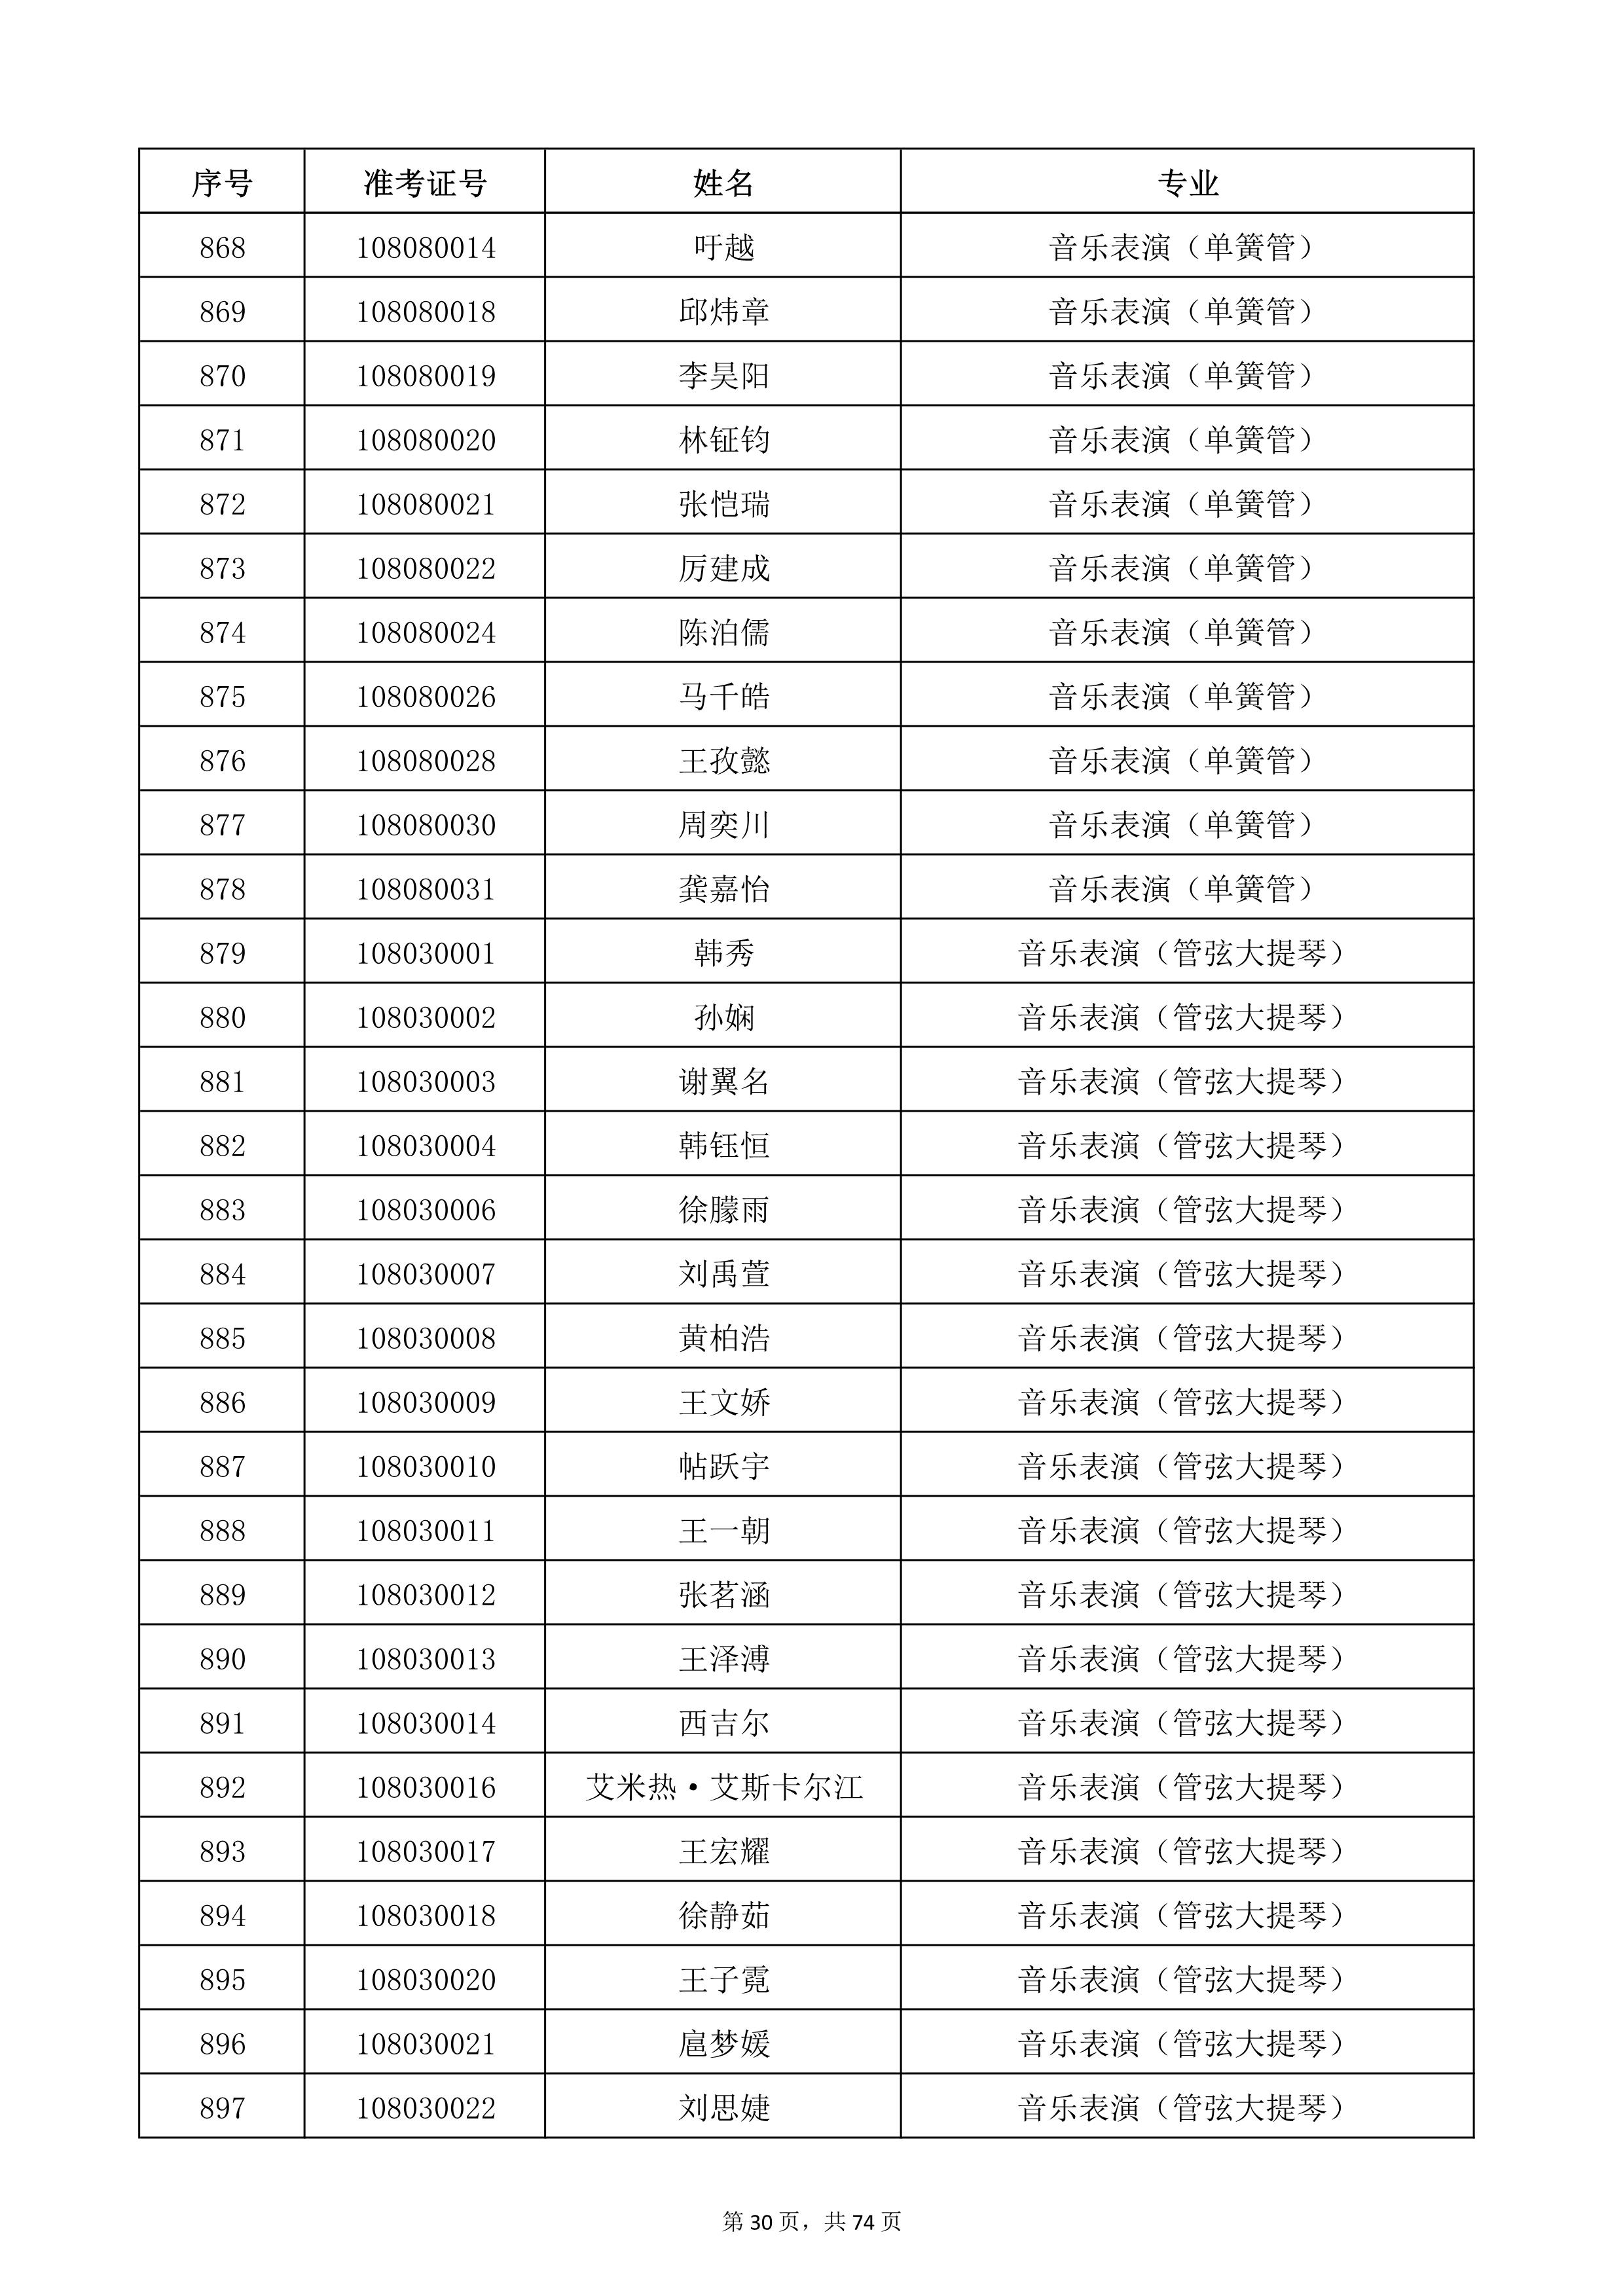 天津音乐学院2022年本科招生考试复试名单_30.jpg